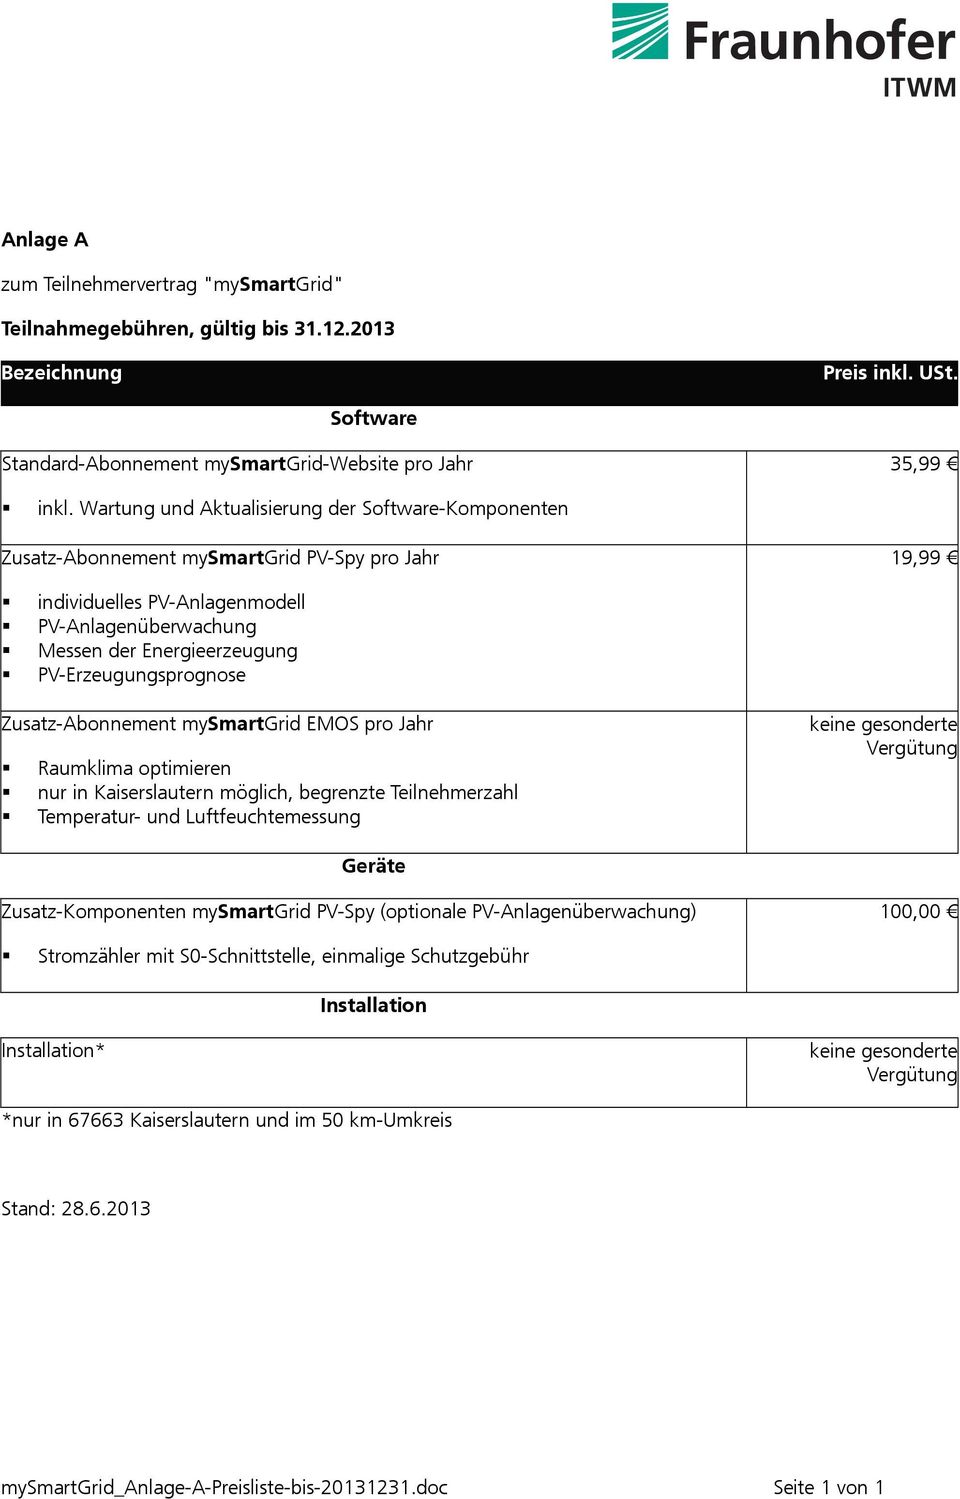 PV-Erzeugungsprognose Zusatz-Abonnement mysmartgrid EMOS pro Jahr Raumklima optimieren nur in Kaiserslautern möglich, begrenzte Teilnehmerzahl Temperatur- und Luftfeuchtemessung keine gesonderte